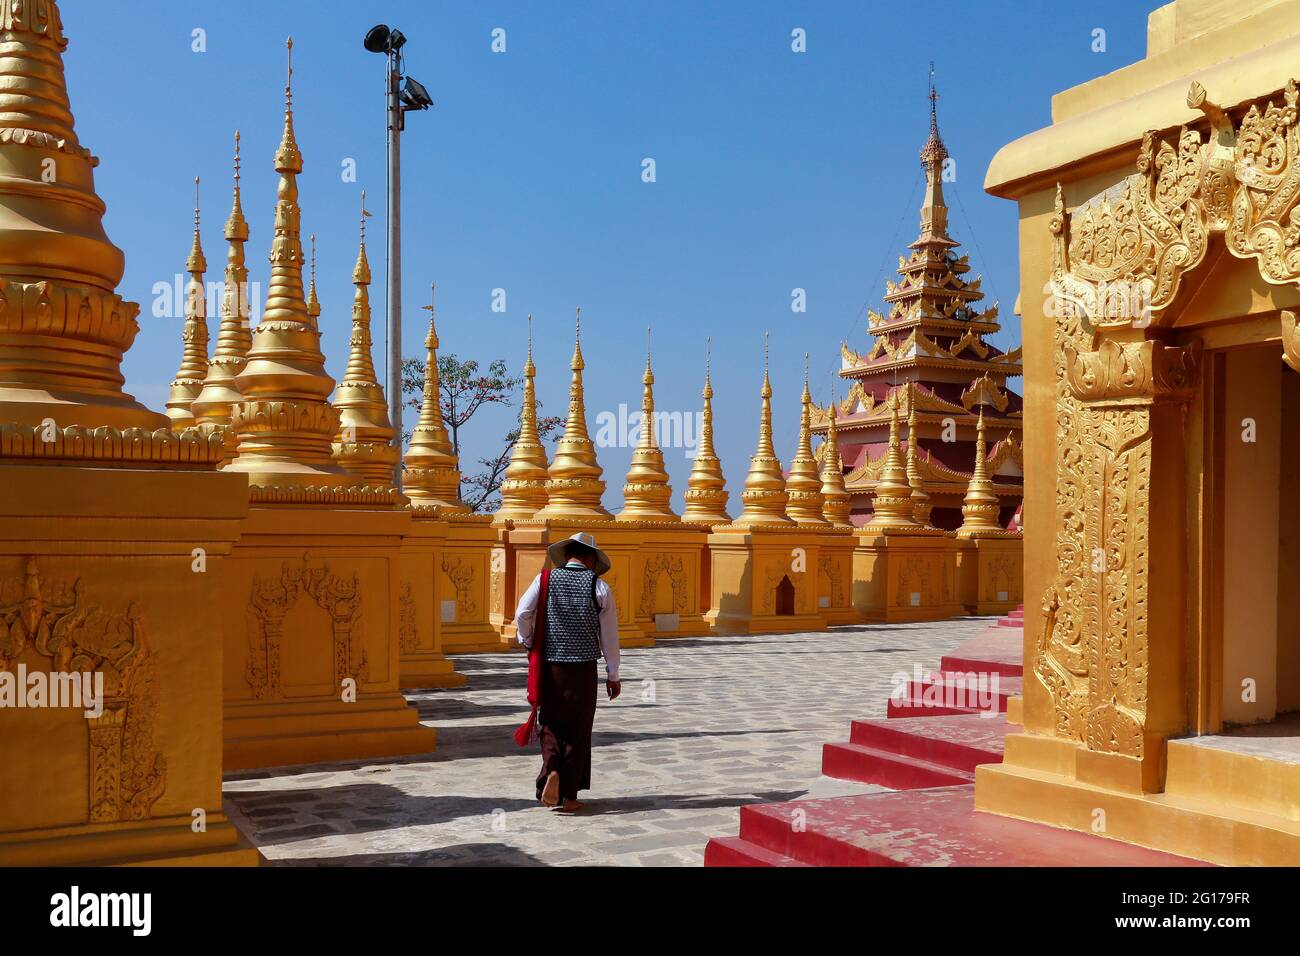 Une pagode et beaucoup de petits stupa dans le complexe du temple Shwemawdaw Paya situé à Bago, Myanmar (Birmanie). Banque D'Images